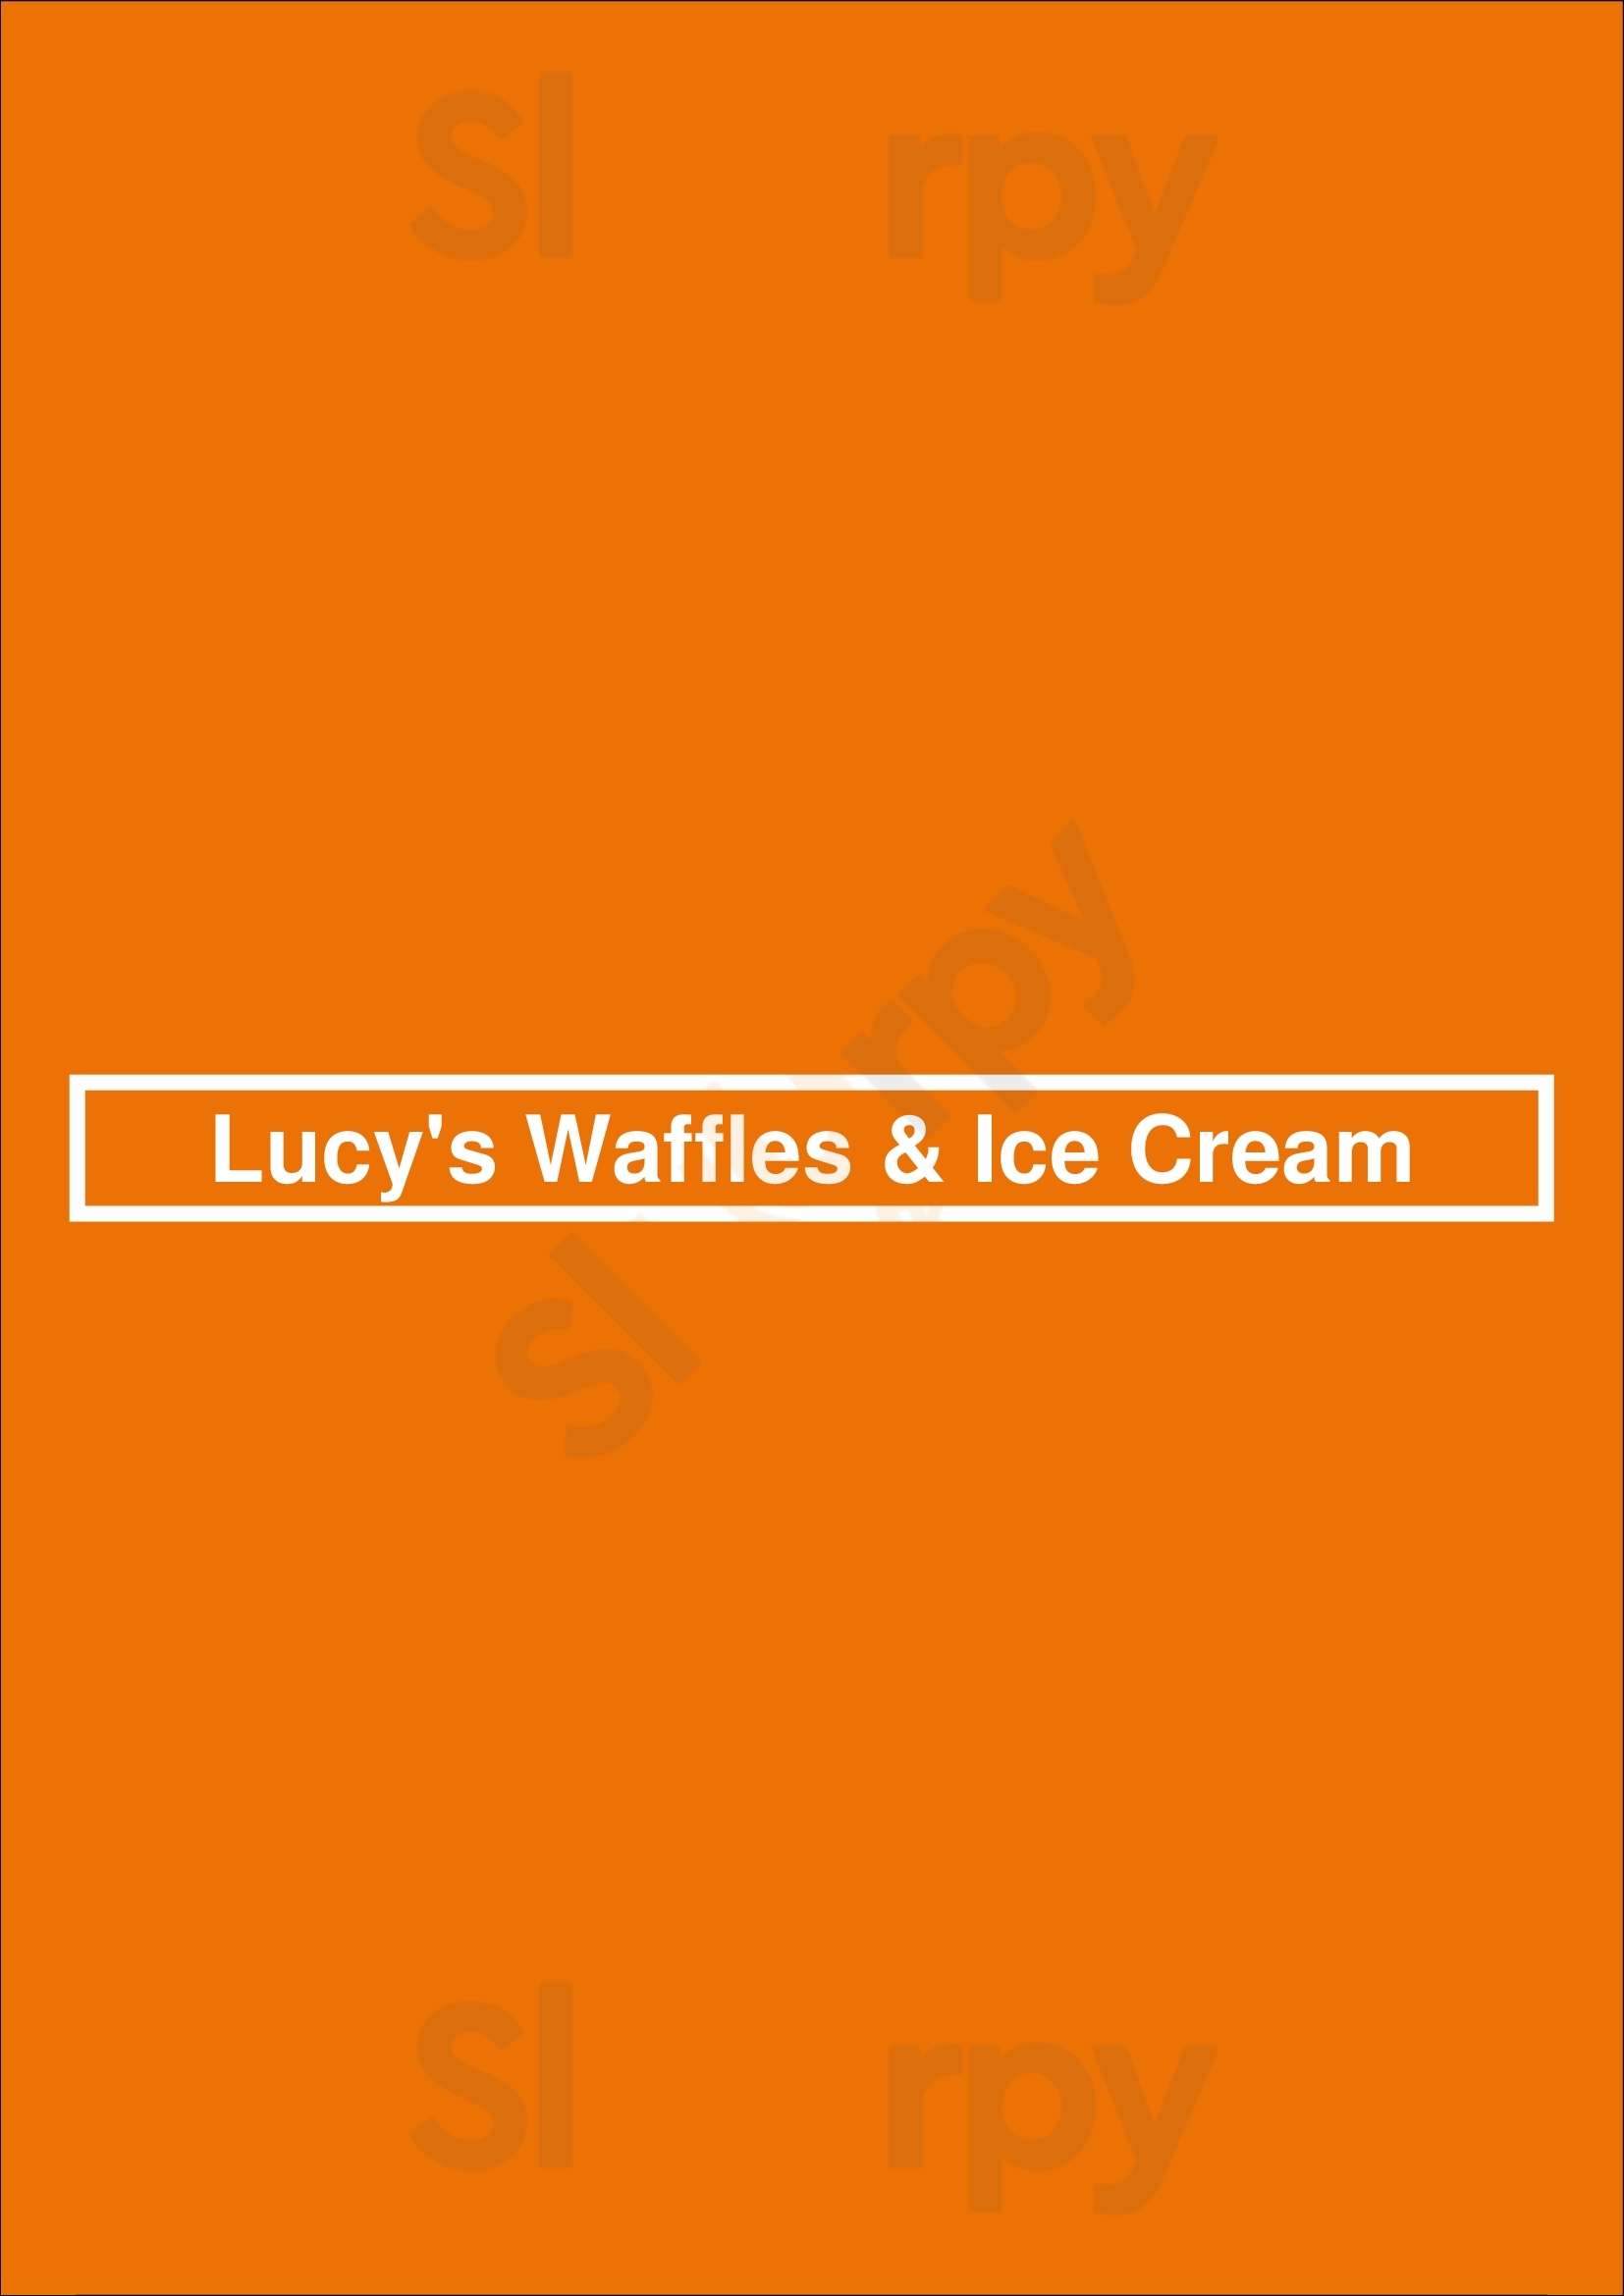 Lucy's Waffles & Ice Cream Las Vegas Menu - 1